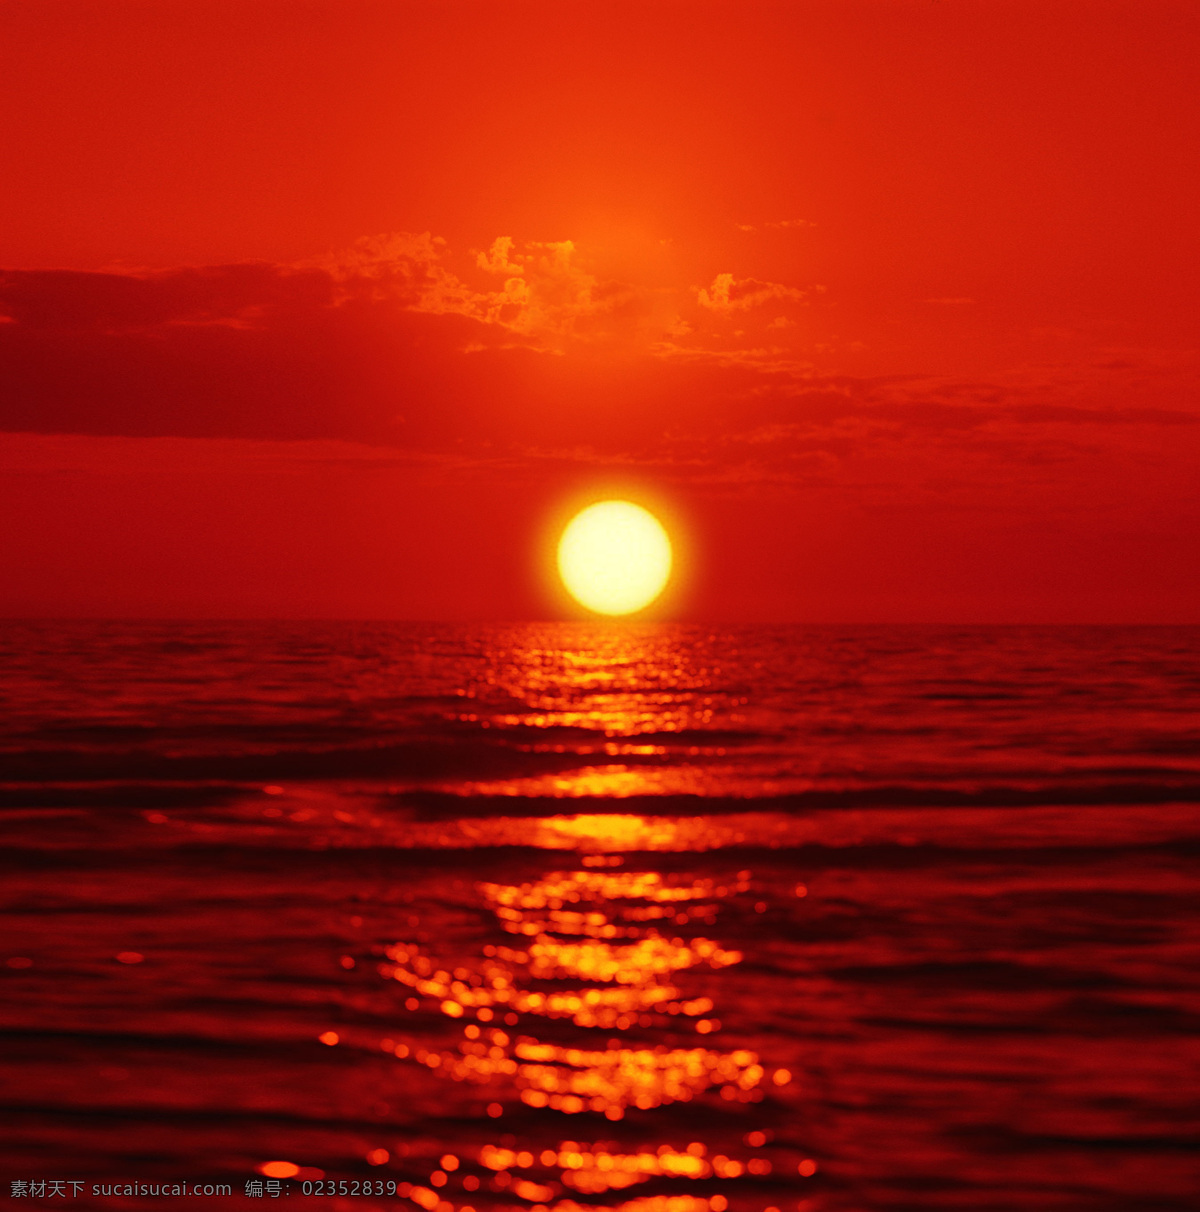 海上日出 海边 日出 夕阳红 太阳 海水 海滩 气魄 美丽 自然 大气 大方 旭日东升 辉煌 黄色 成就 金黄色 水天相接 潮汐 阳光 射线 日出东方 海边日出 自然风景 自然景观 红色 夕阳 落日